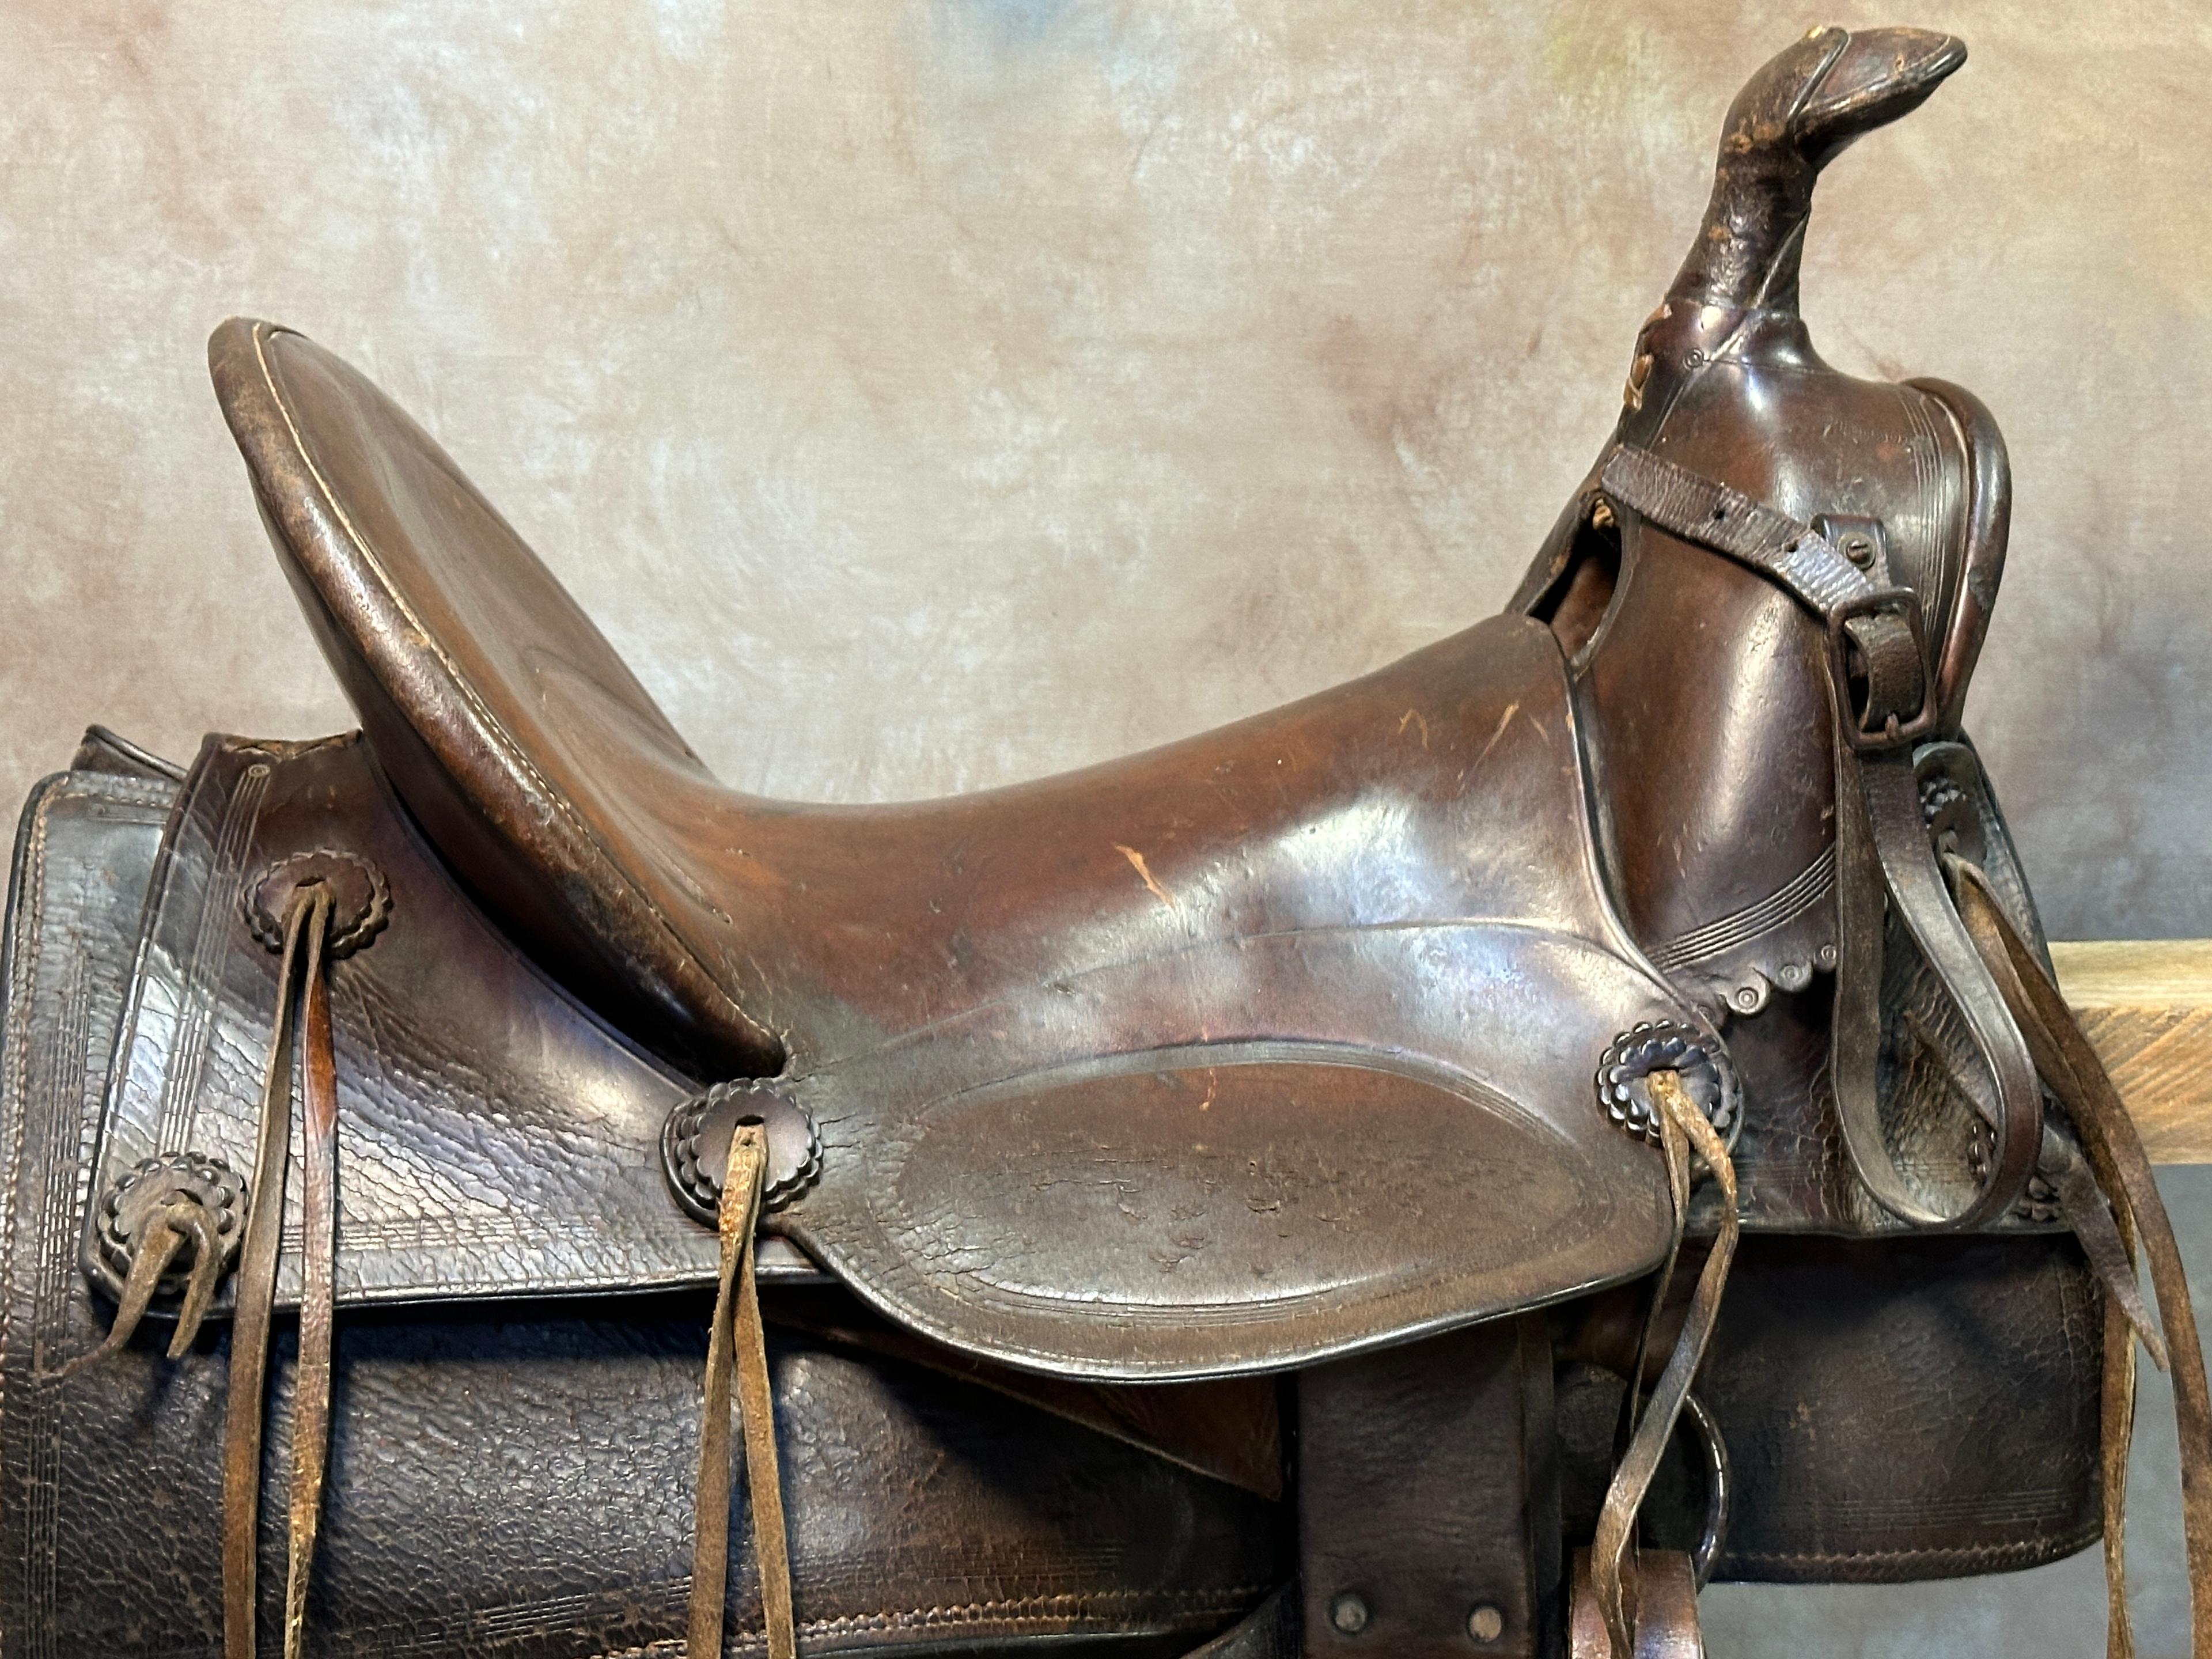 Large Leather Ranch Saddle